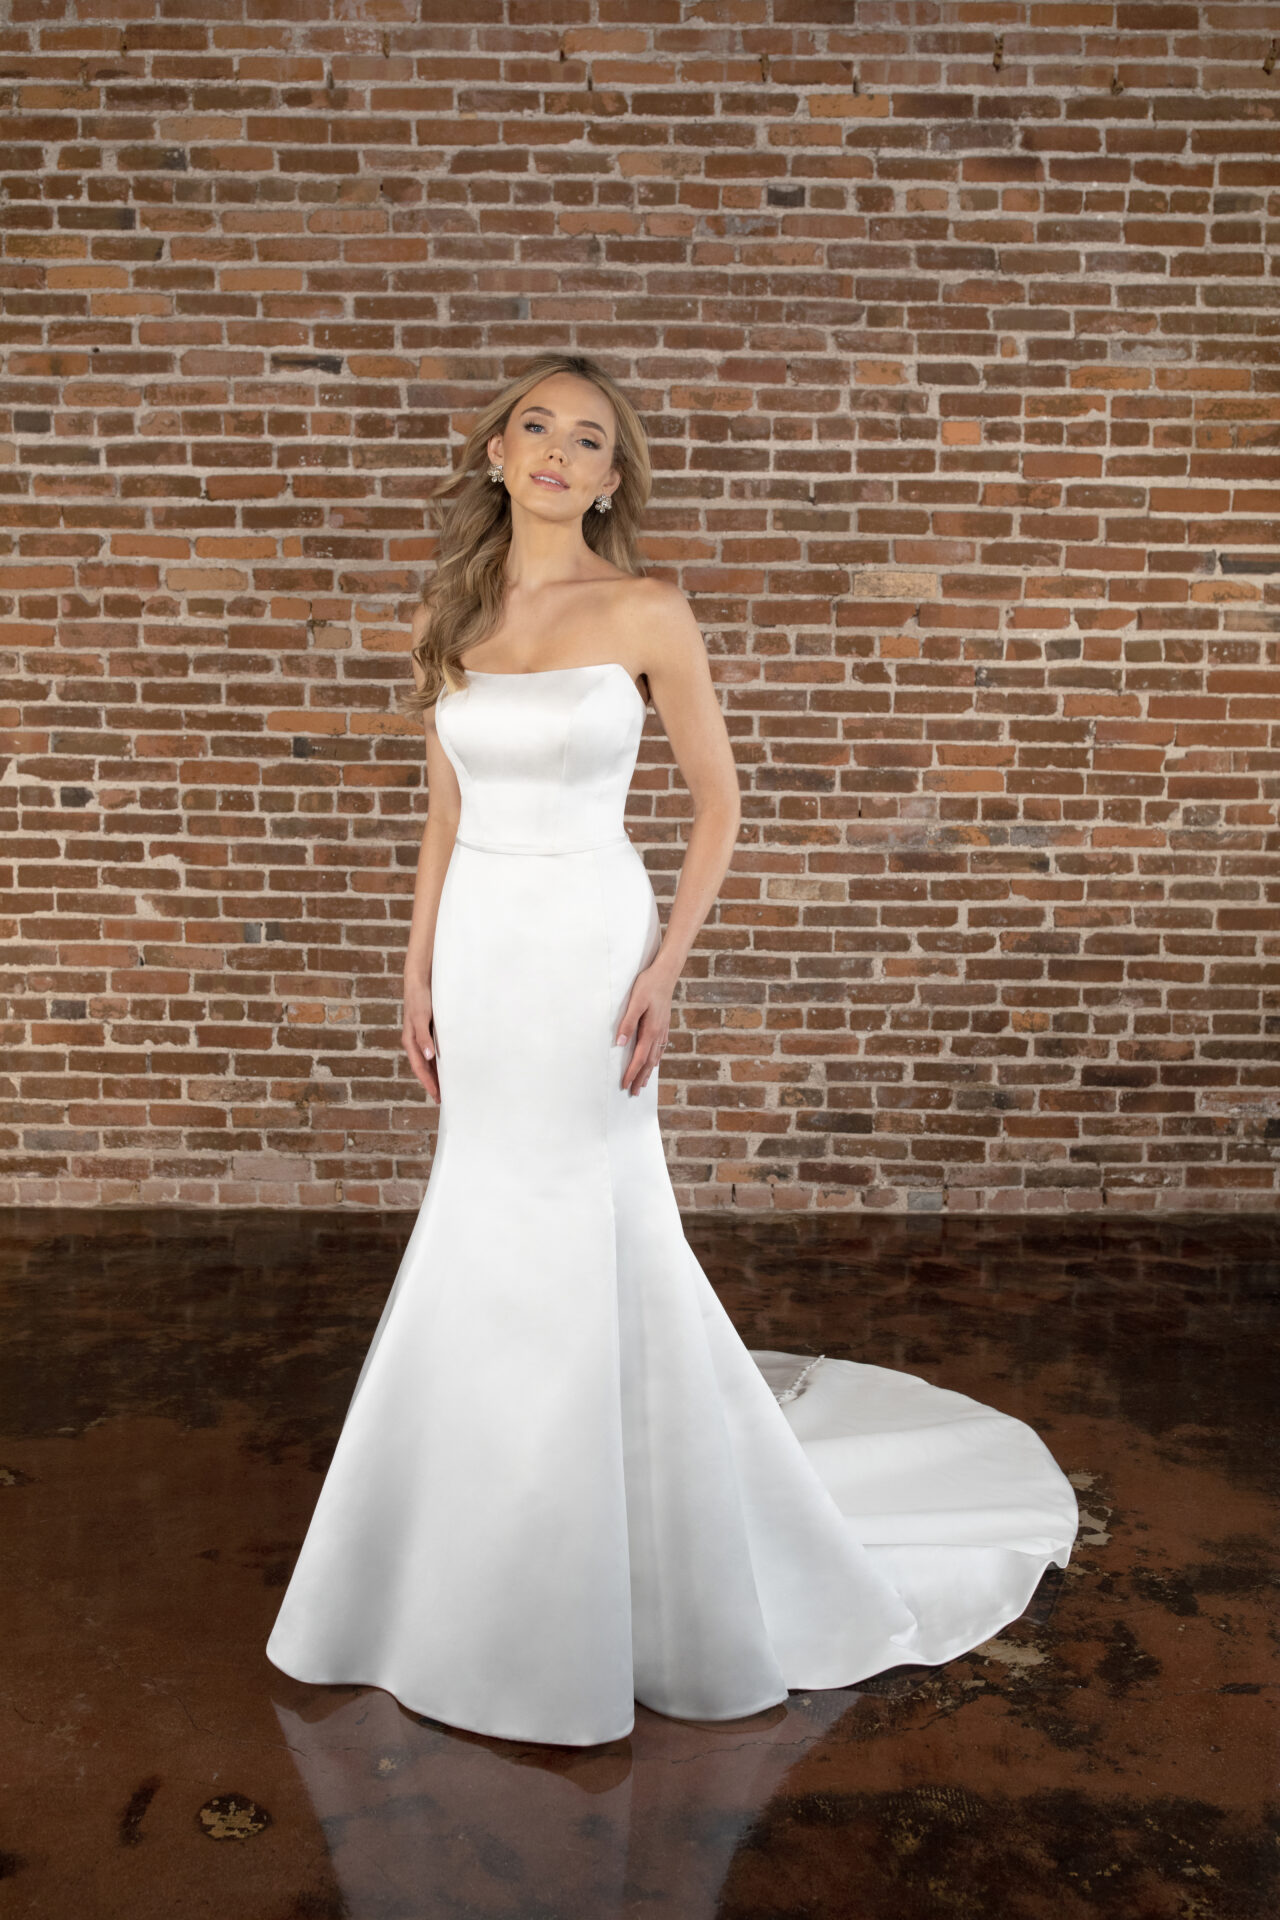 12 Hot White Prom Dresses for 2018 - All White Formal Dresses